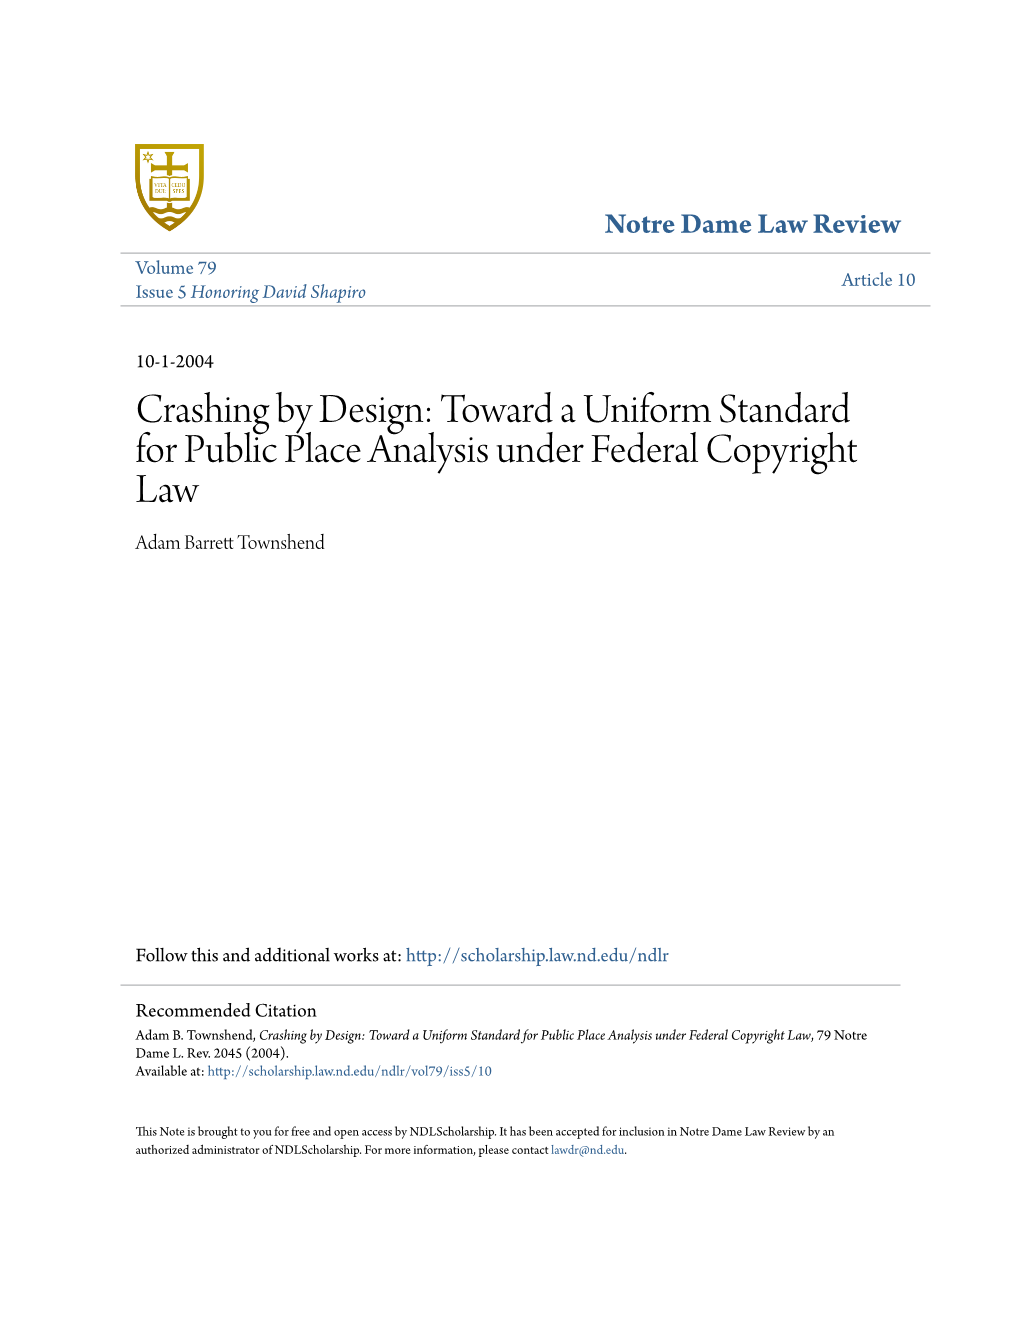 Toward a Uniform Standard for Public Place Analysis Under Federal Copyright Law Adam Barrett Ot Wnshend